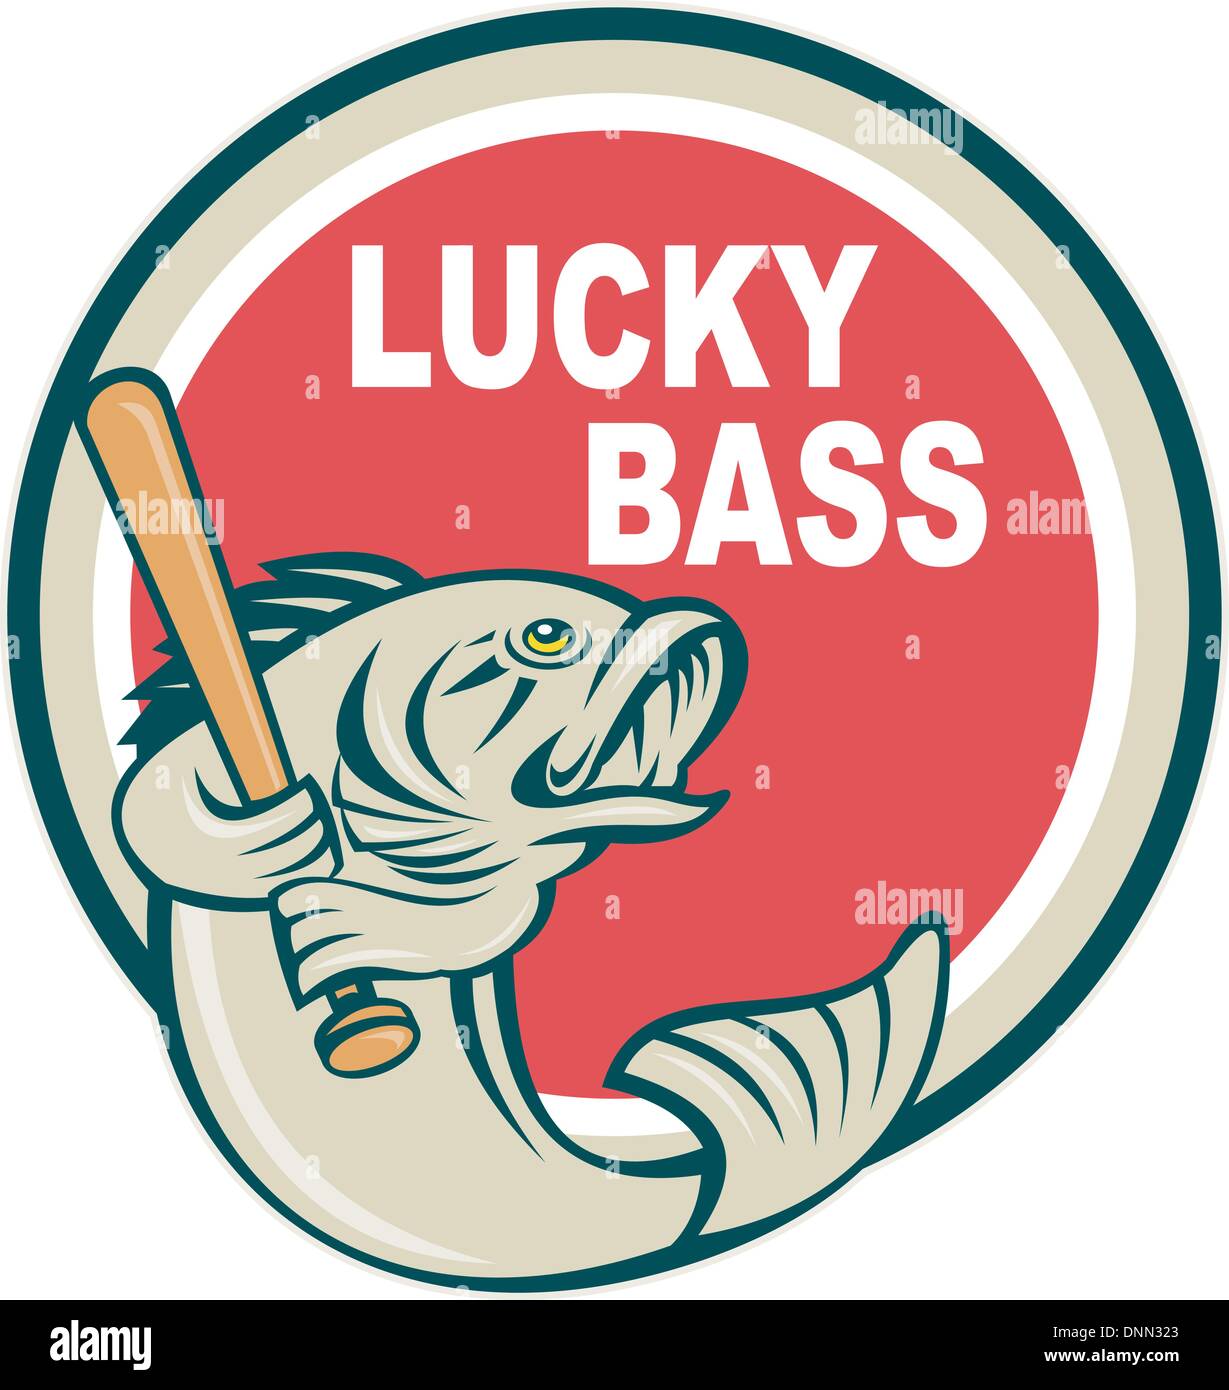 https://c8.alamy.com/comp/DNN323/illustration-of-a-bass-with-baseball-bat-and-wording-lucky-bass-inside-DNN323.jpg